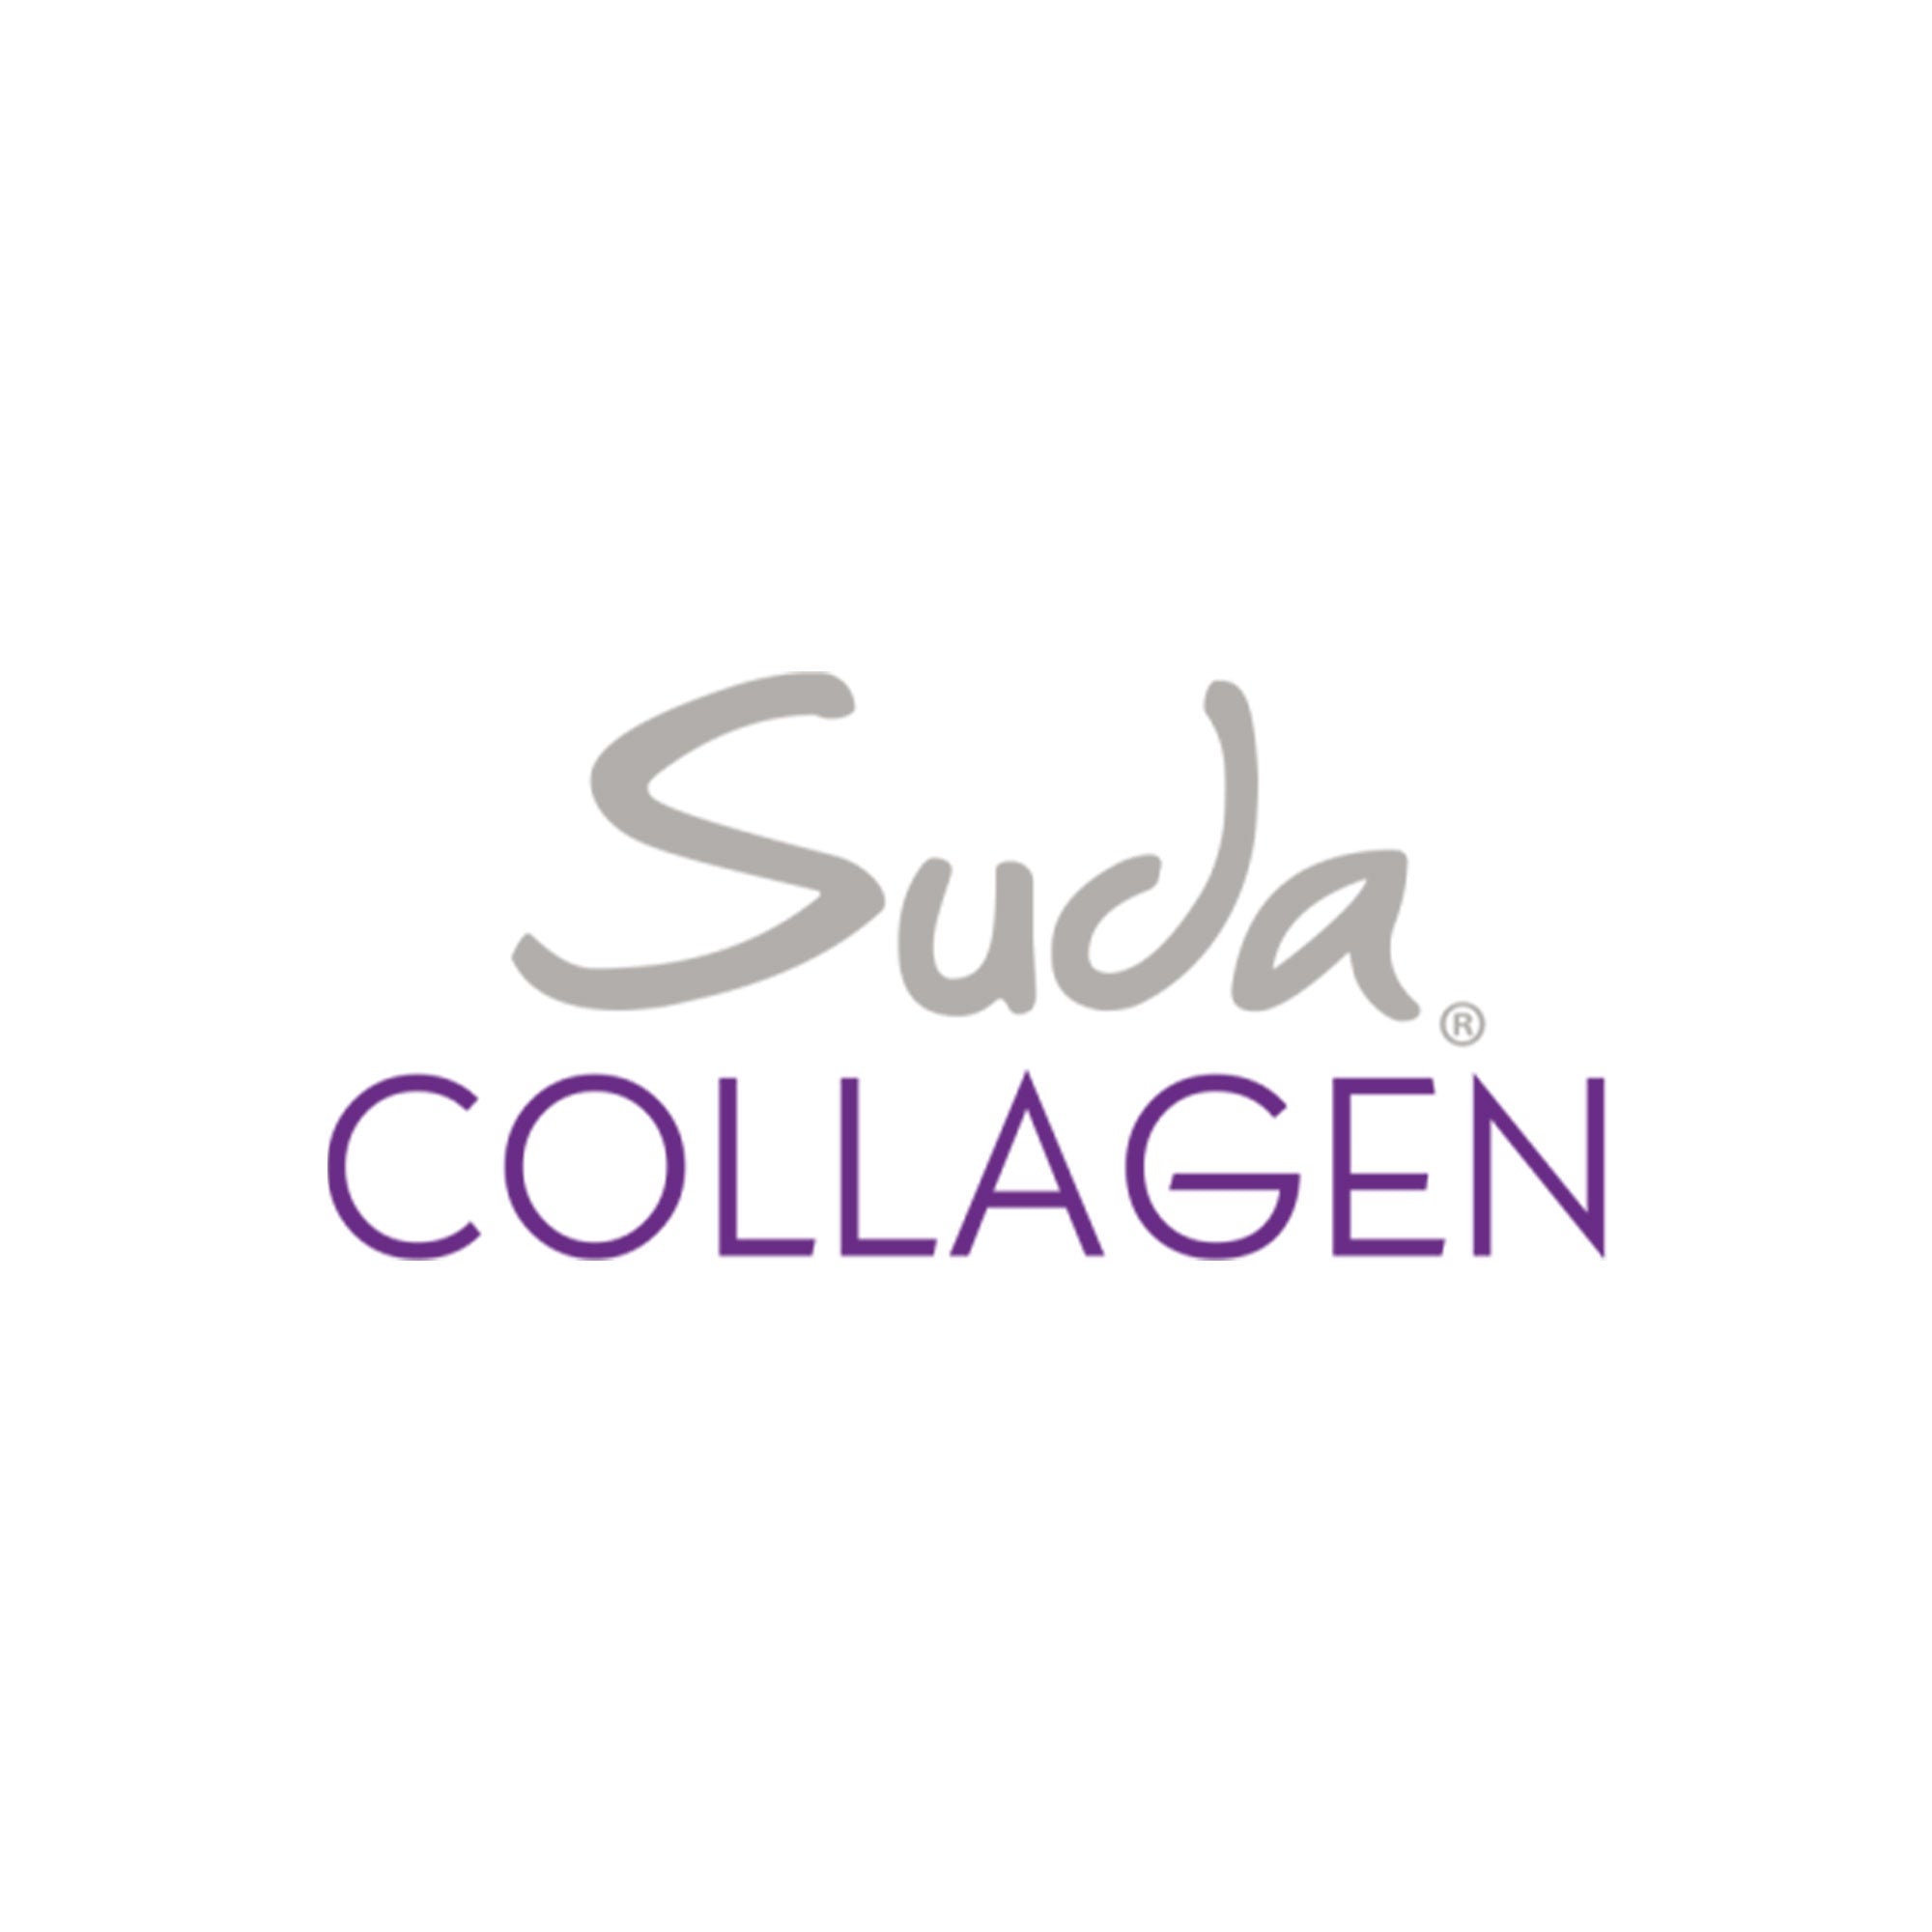 suda-collagen